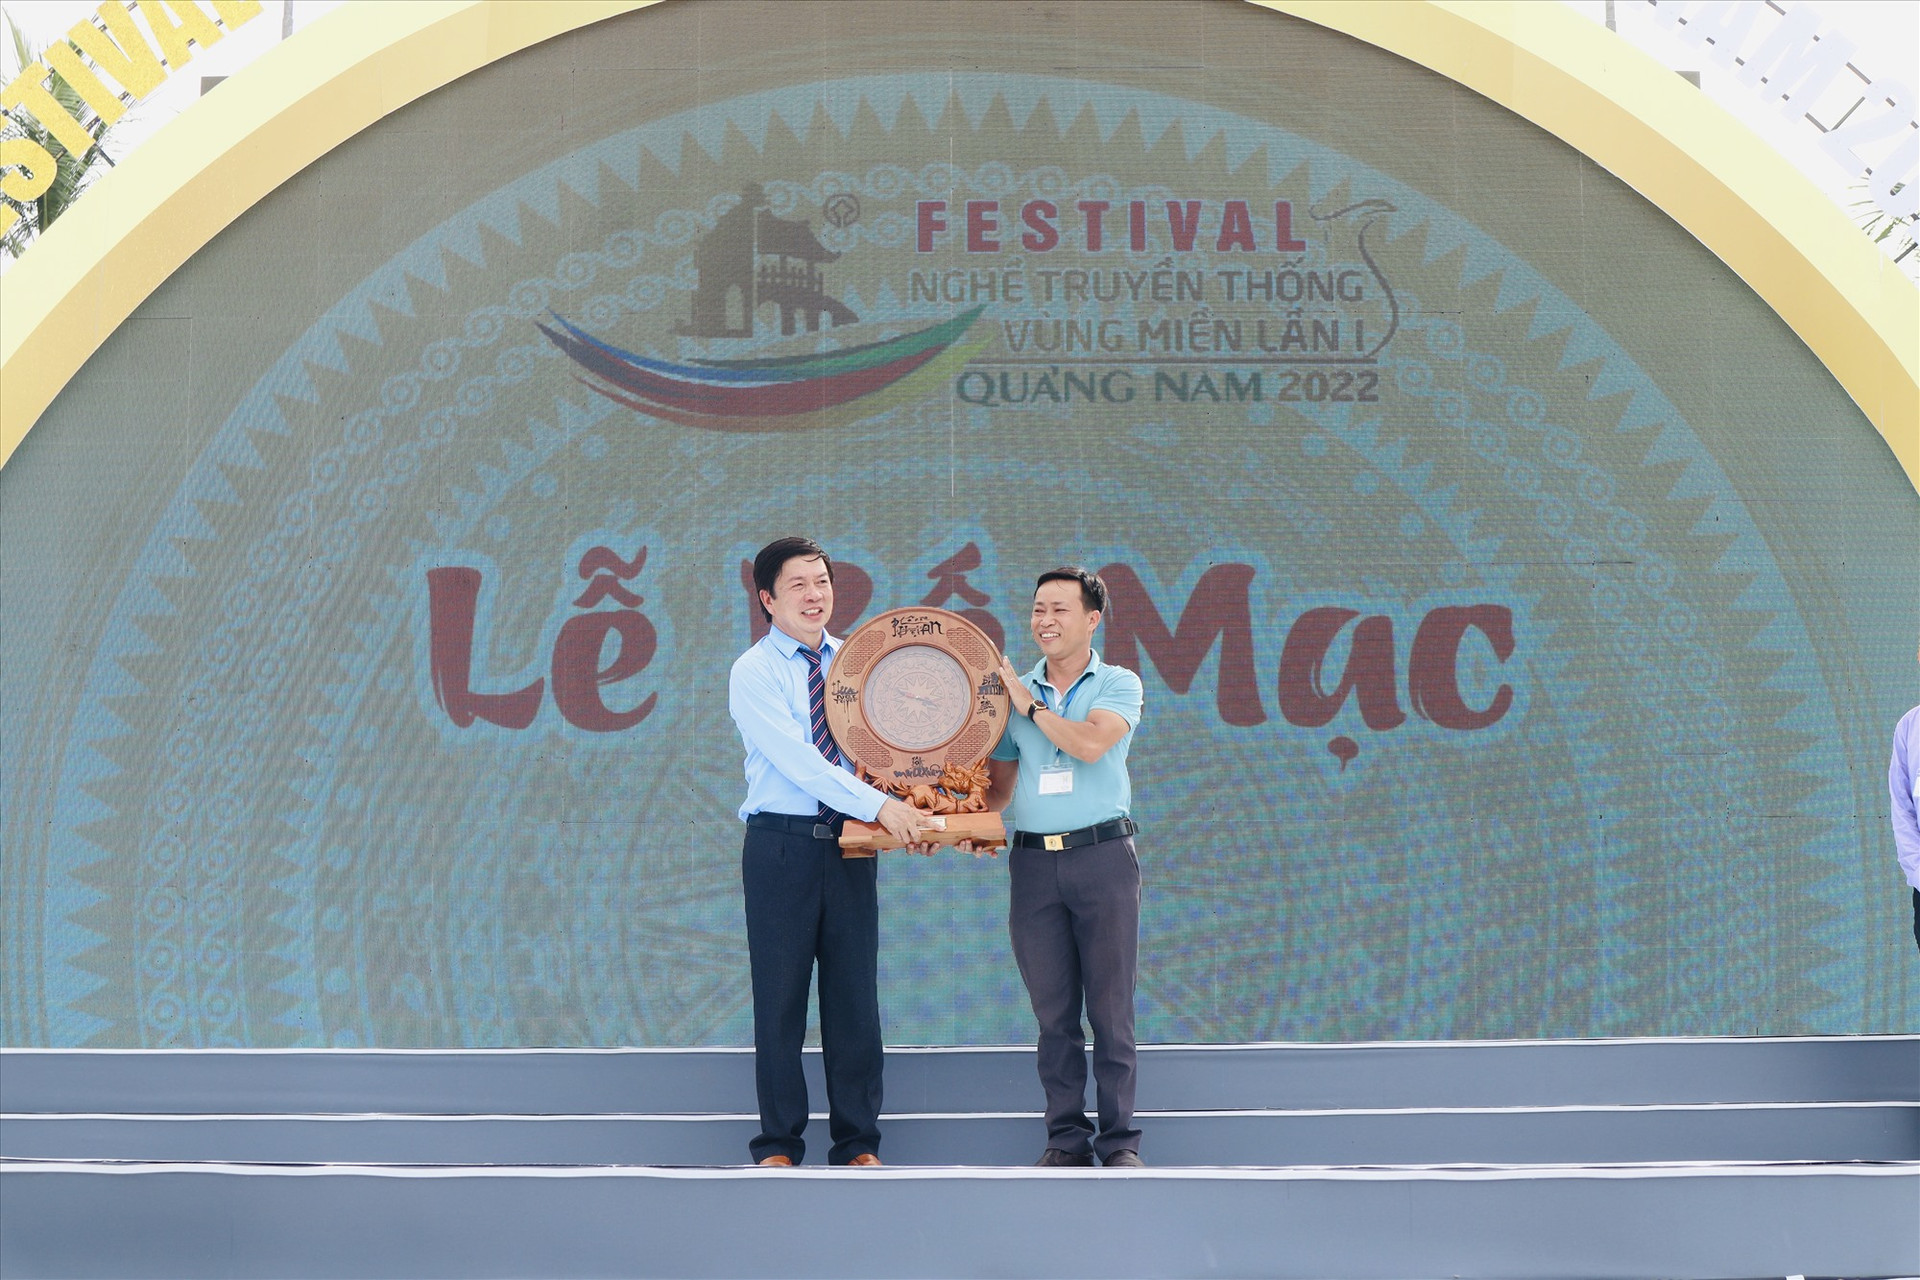 Đại diện ban tổ chức (bên trái) nhận quà lưu niệm từ một đơn vị tham gia Festival. Ảnh: Q.T